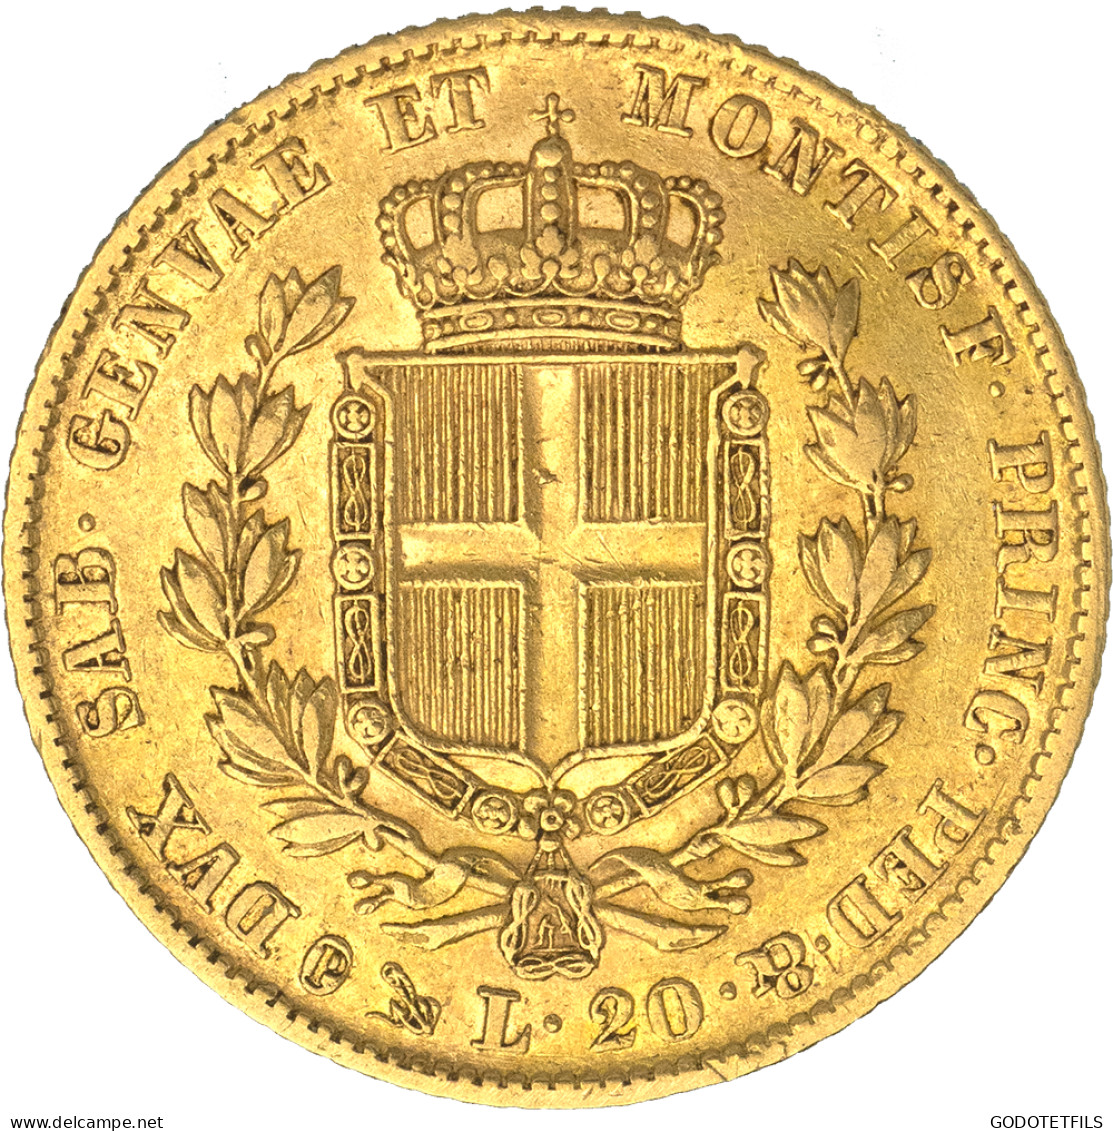 Italie-Royaume De Sardaigne-20 Lire Charles-Albert 1838 Gênes - Piemont-Sardinien-It. Savoyen